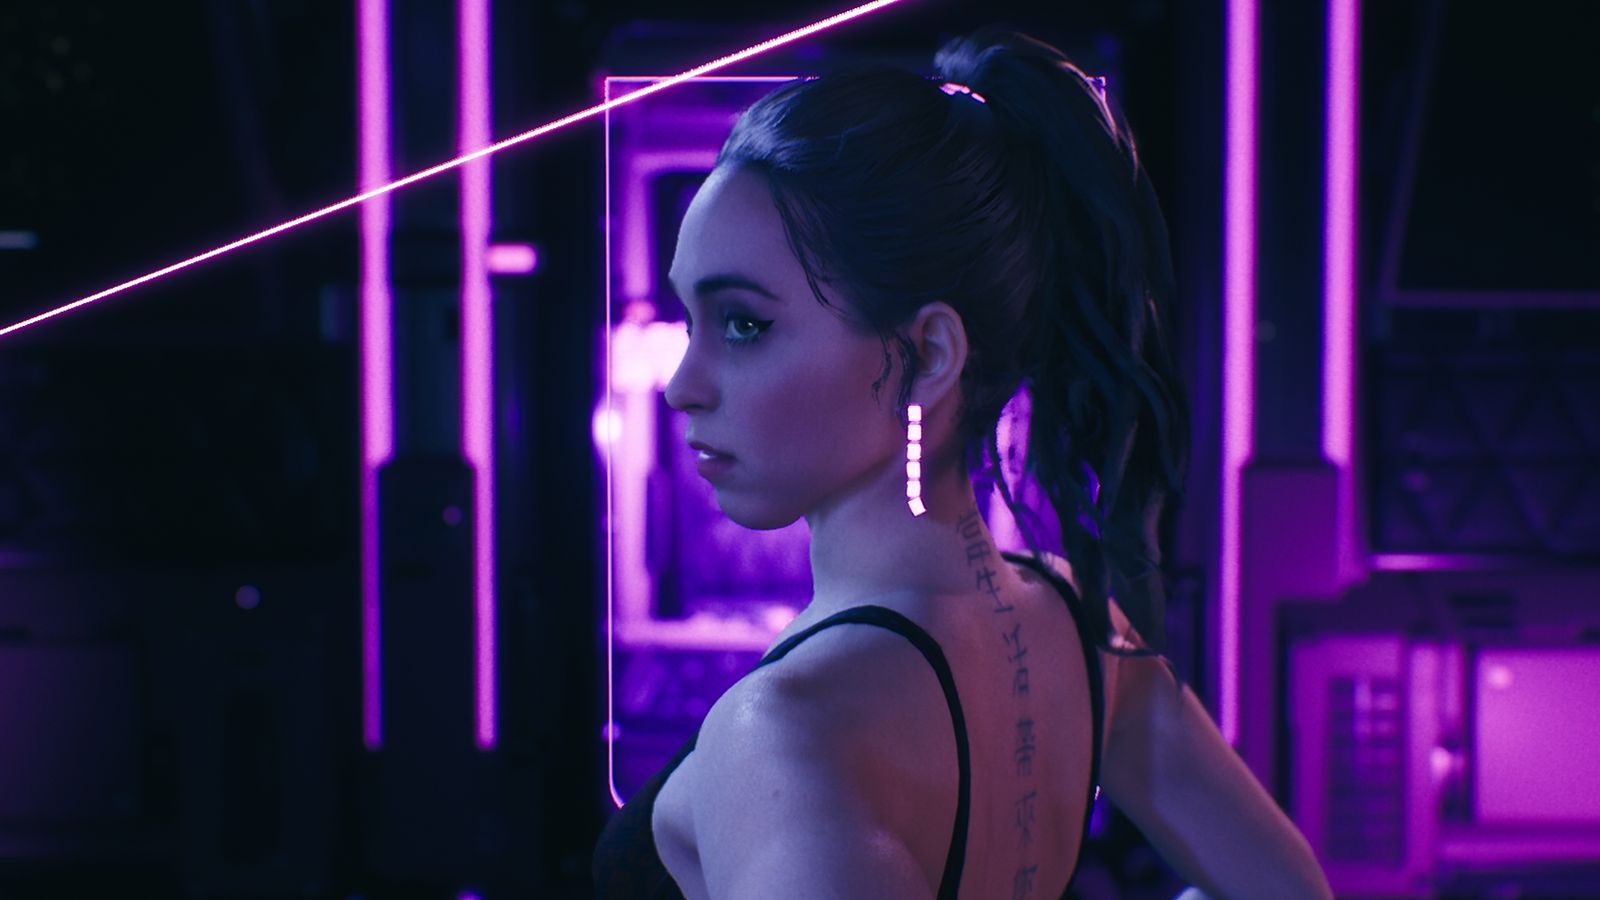 A render of adult film star Riley Reid in VR